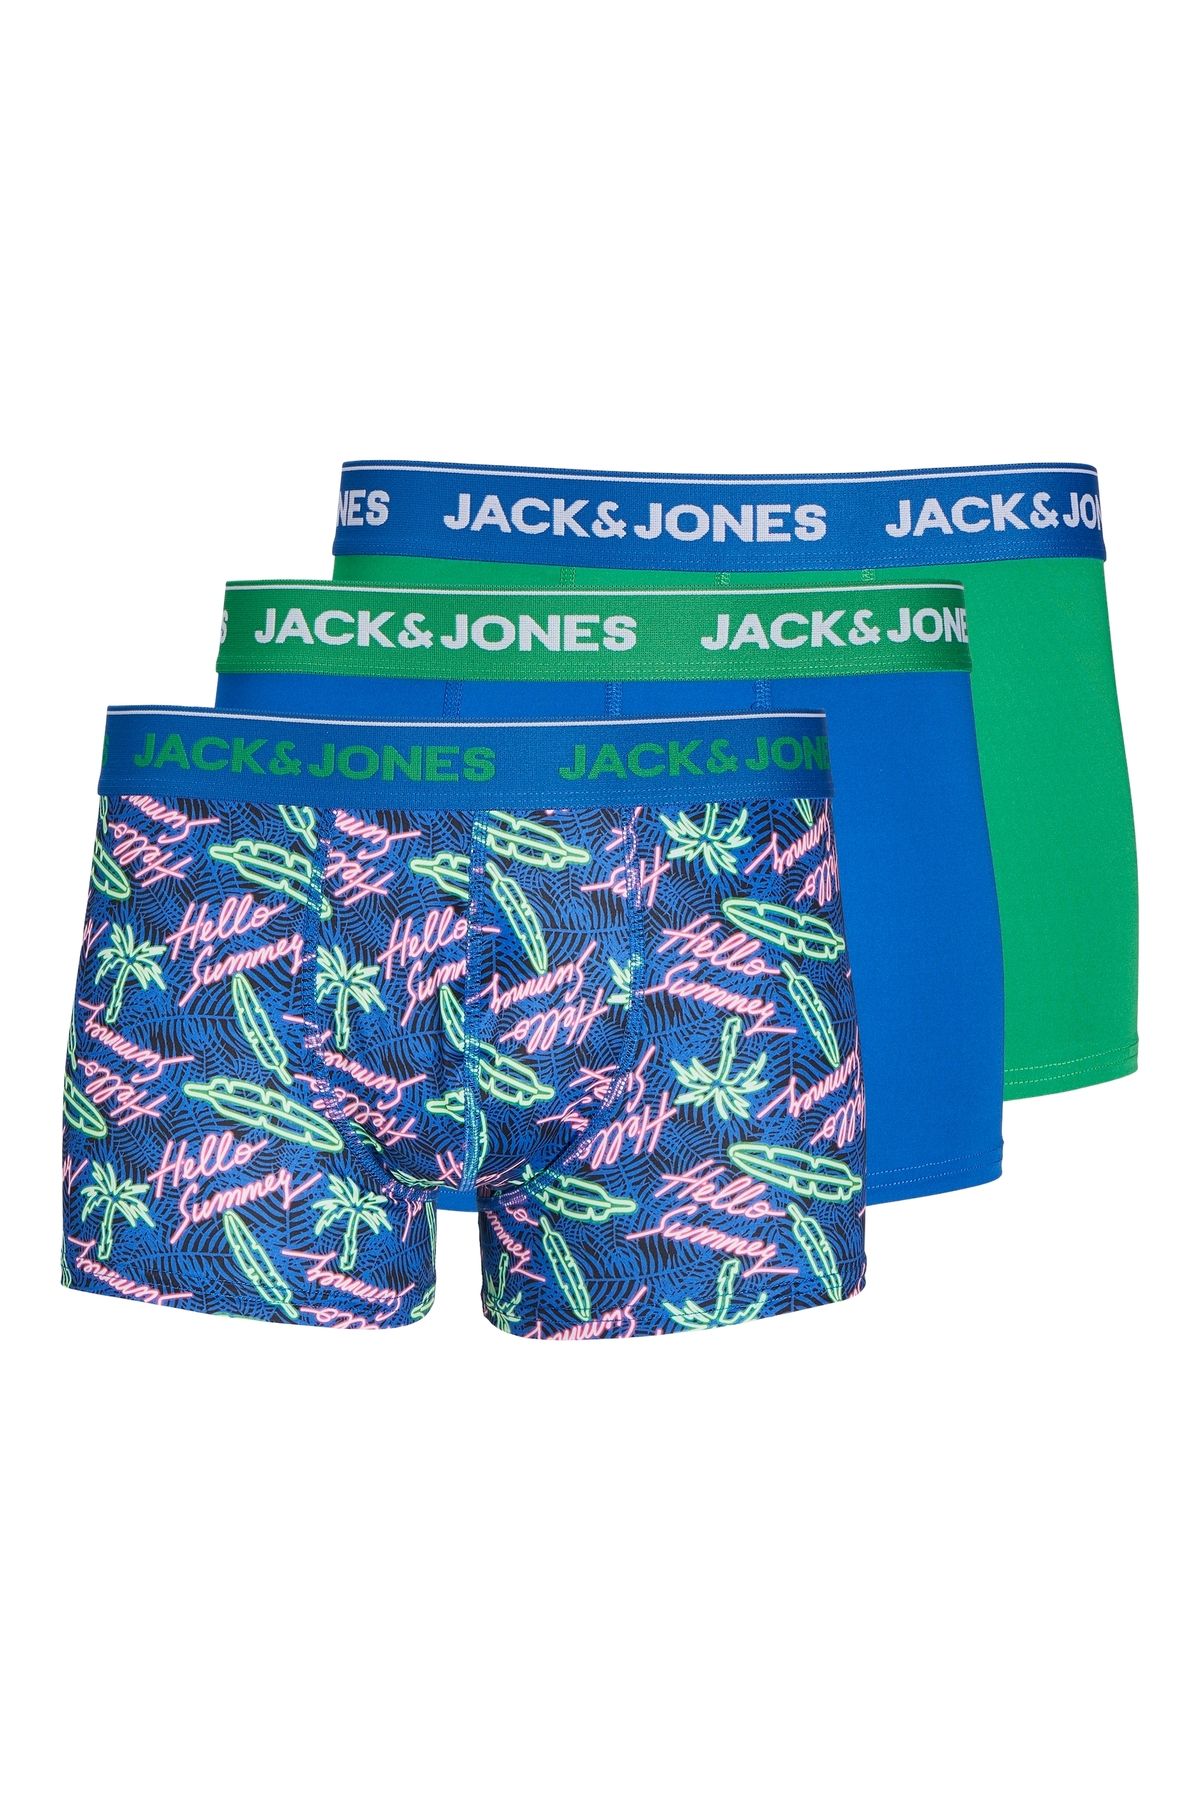 Jack & Jones Jack Jones Jacneon Mıcrofıber Trunks 3 Pack Erkek Mavi Boxer 12252731-07